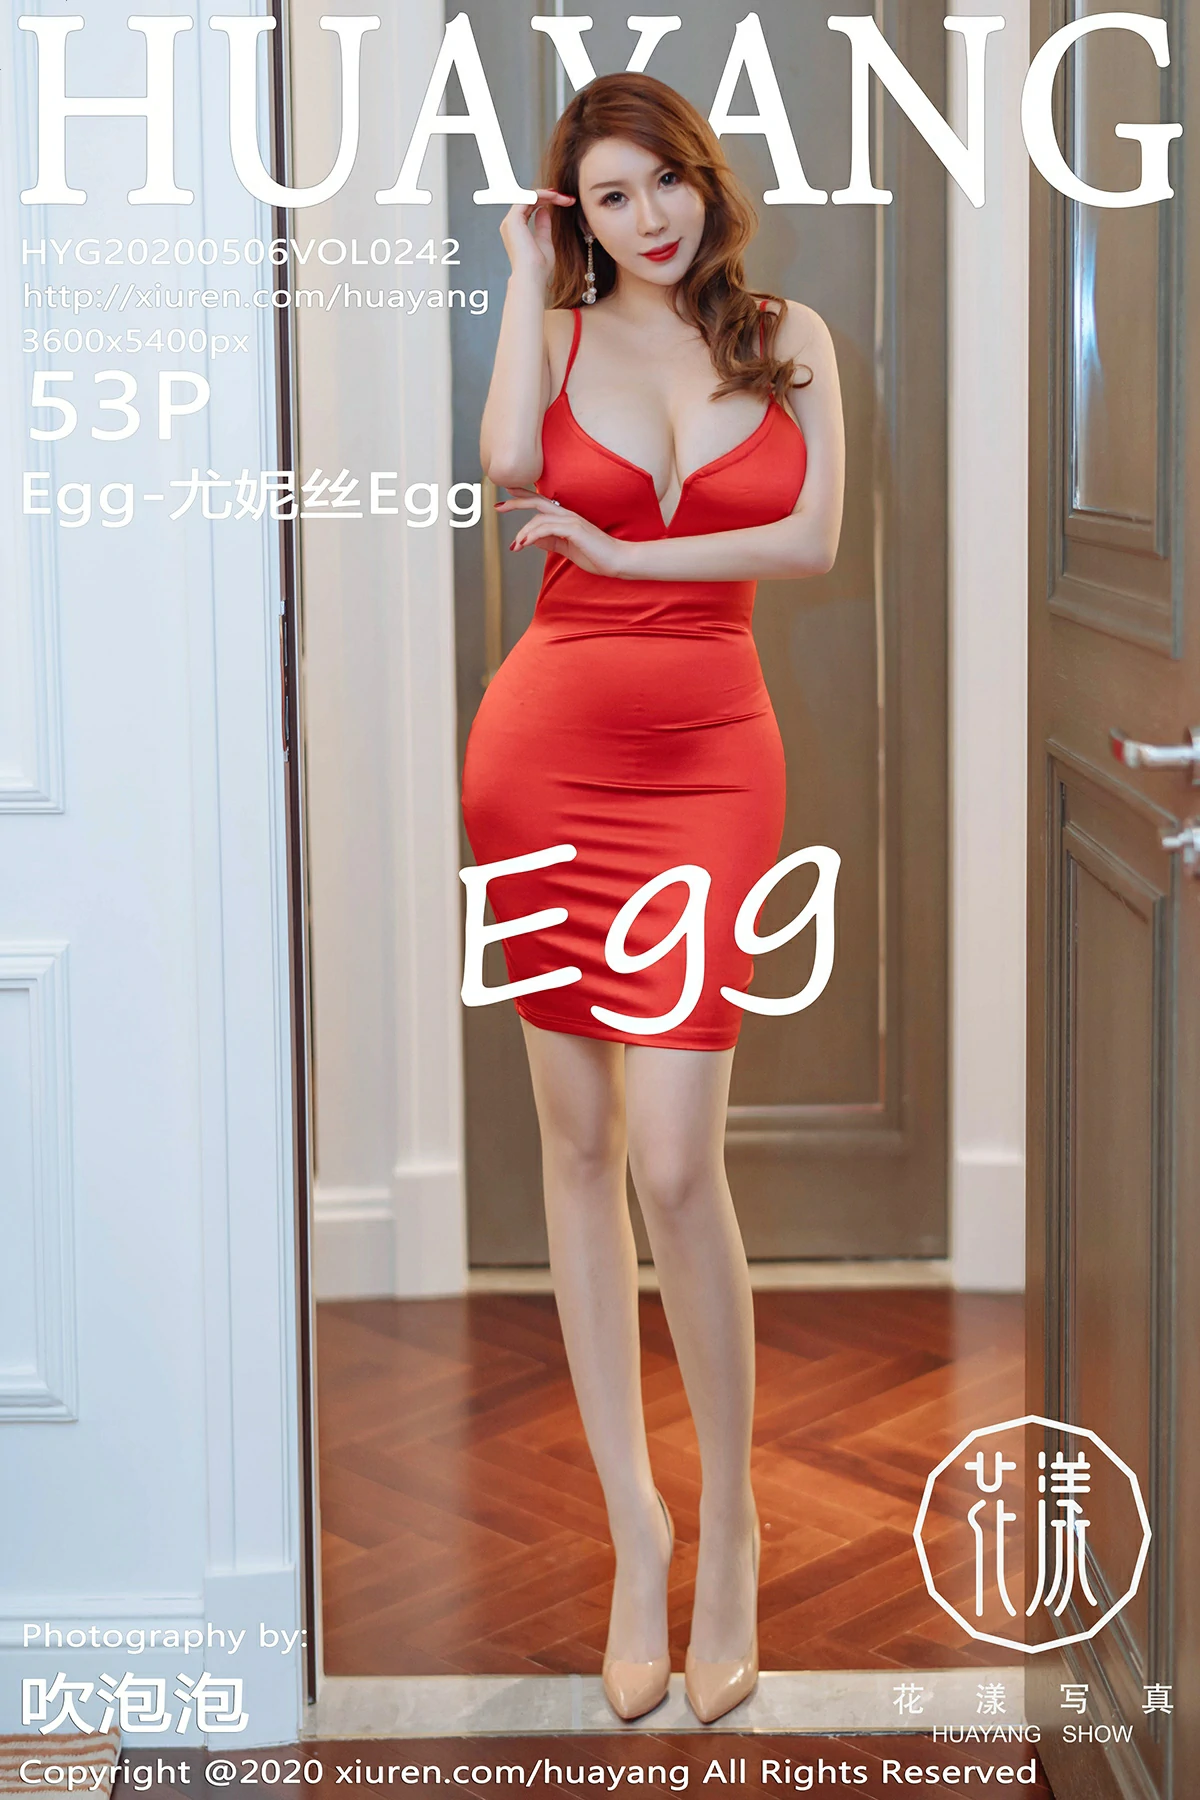 [HuaYang花漾show]HYG20200506VOL0242 Egg-尤妮丝Egg 红色紧身吊带连衣裙性感私房写真集,